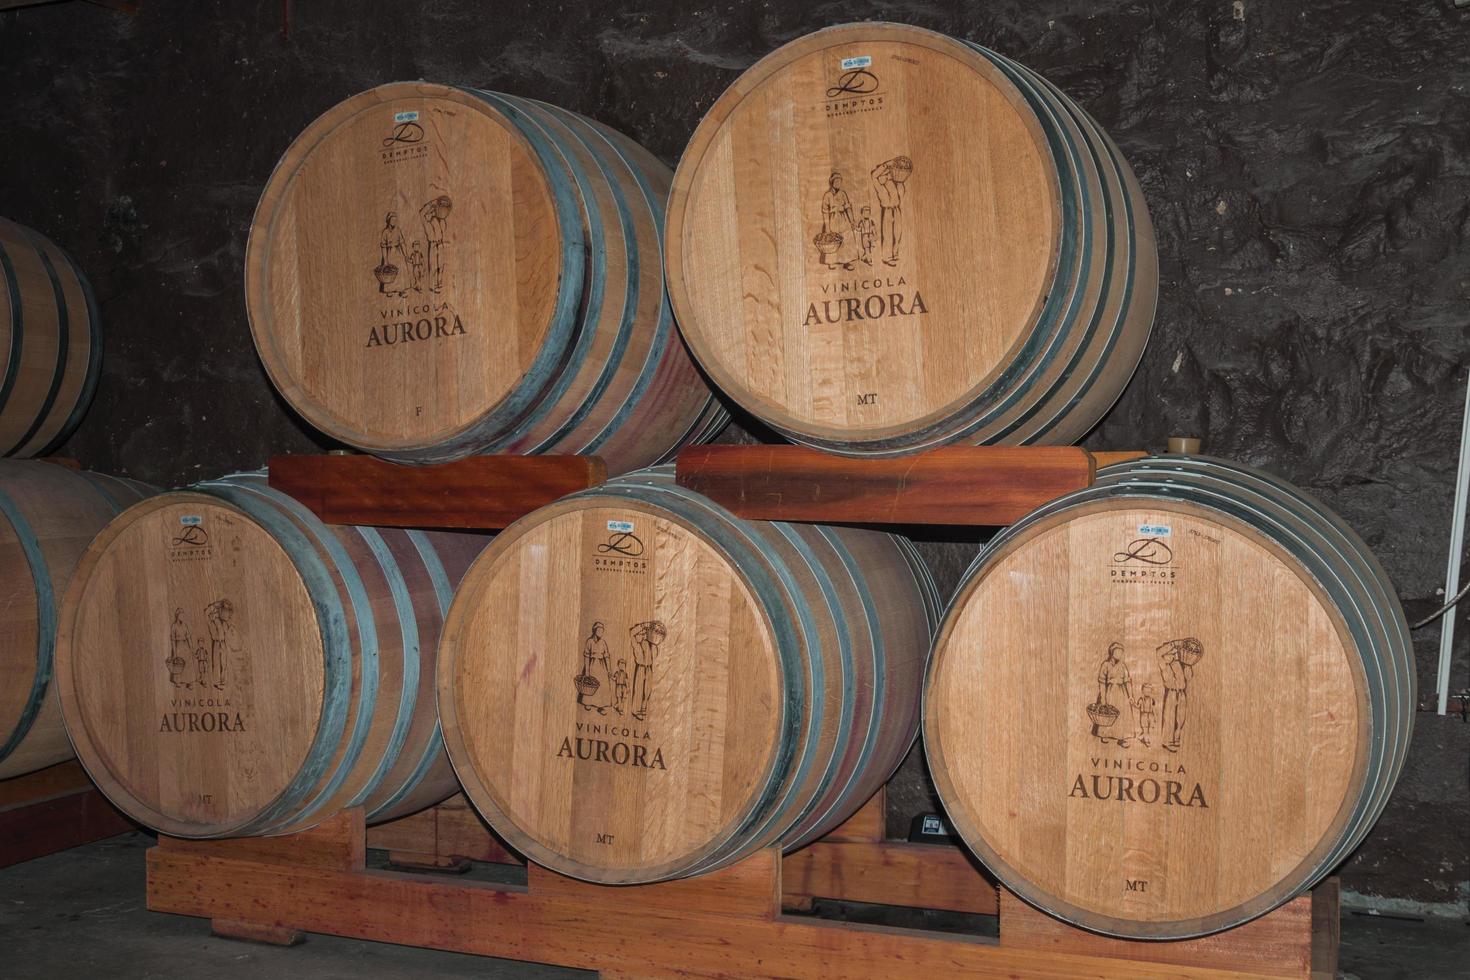 Bento Goncalves, Brasilien - 11. Juli 2019. Haufen von Holzfässern zur Lagerung und Weinreifung in einem Keller aus dem Aurora-Weingut bei Bento Goncalves. eine freundliche Landstadt, die für ihre Weinproduktion bekannt ist foto